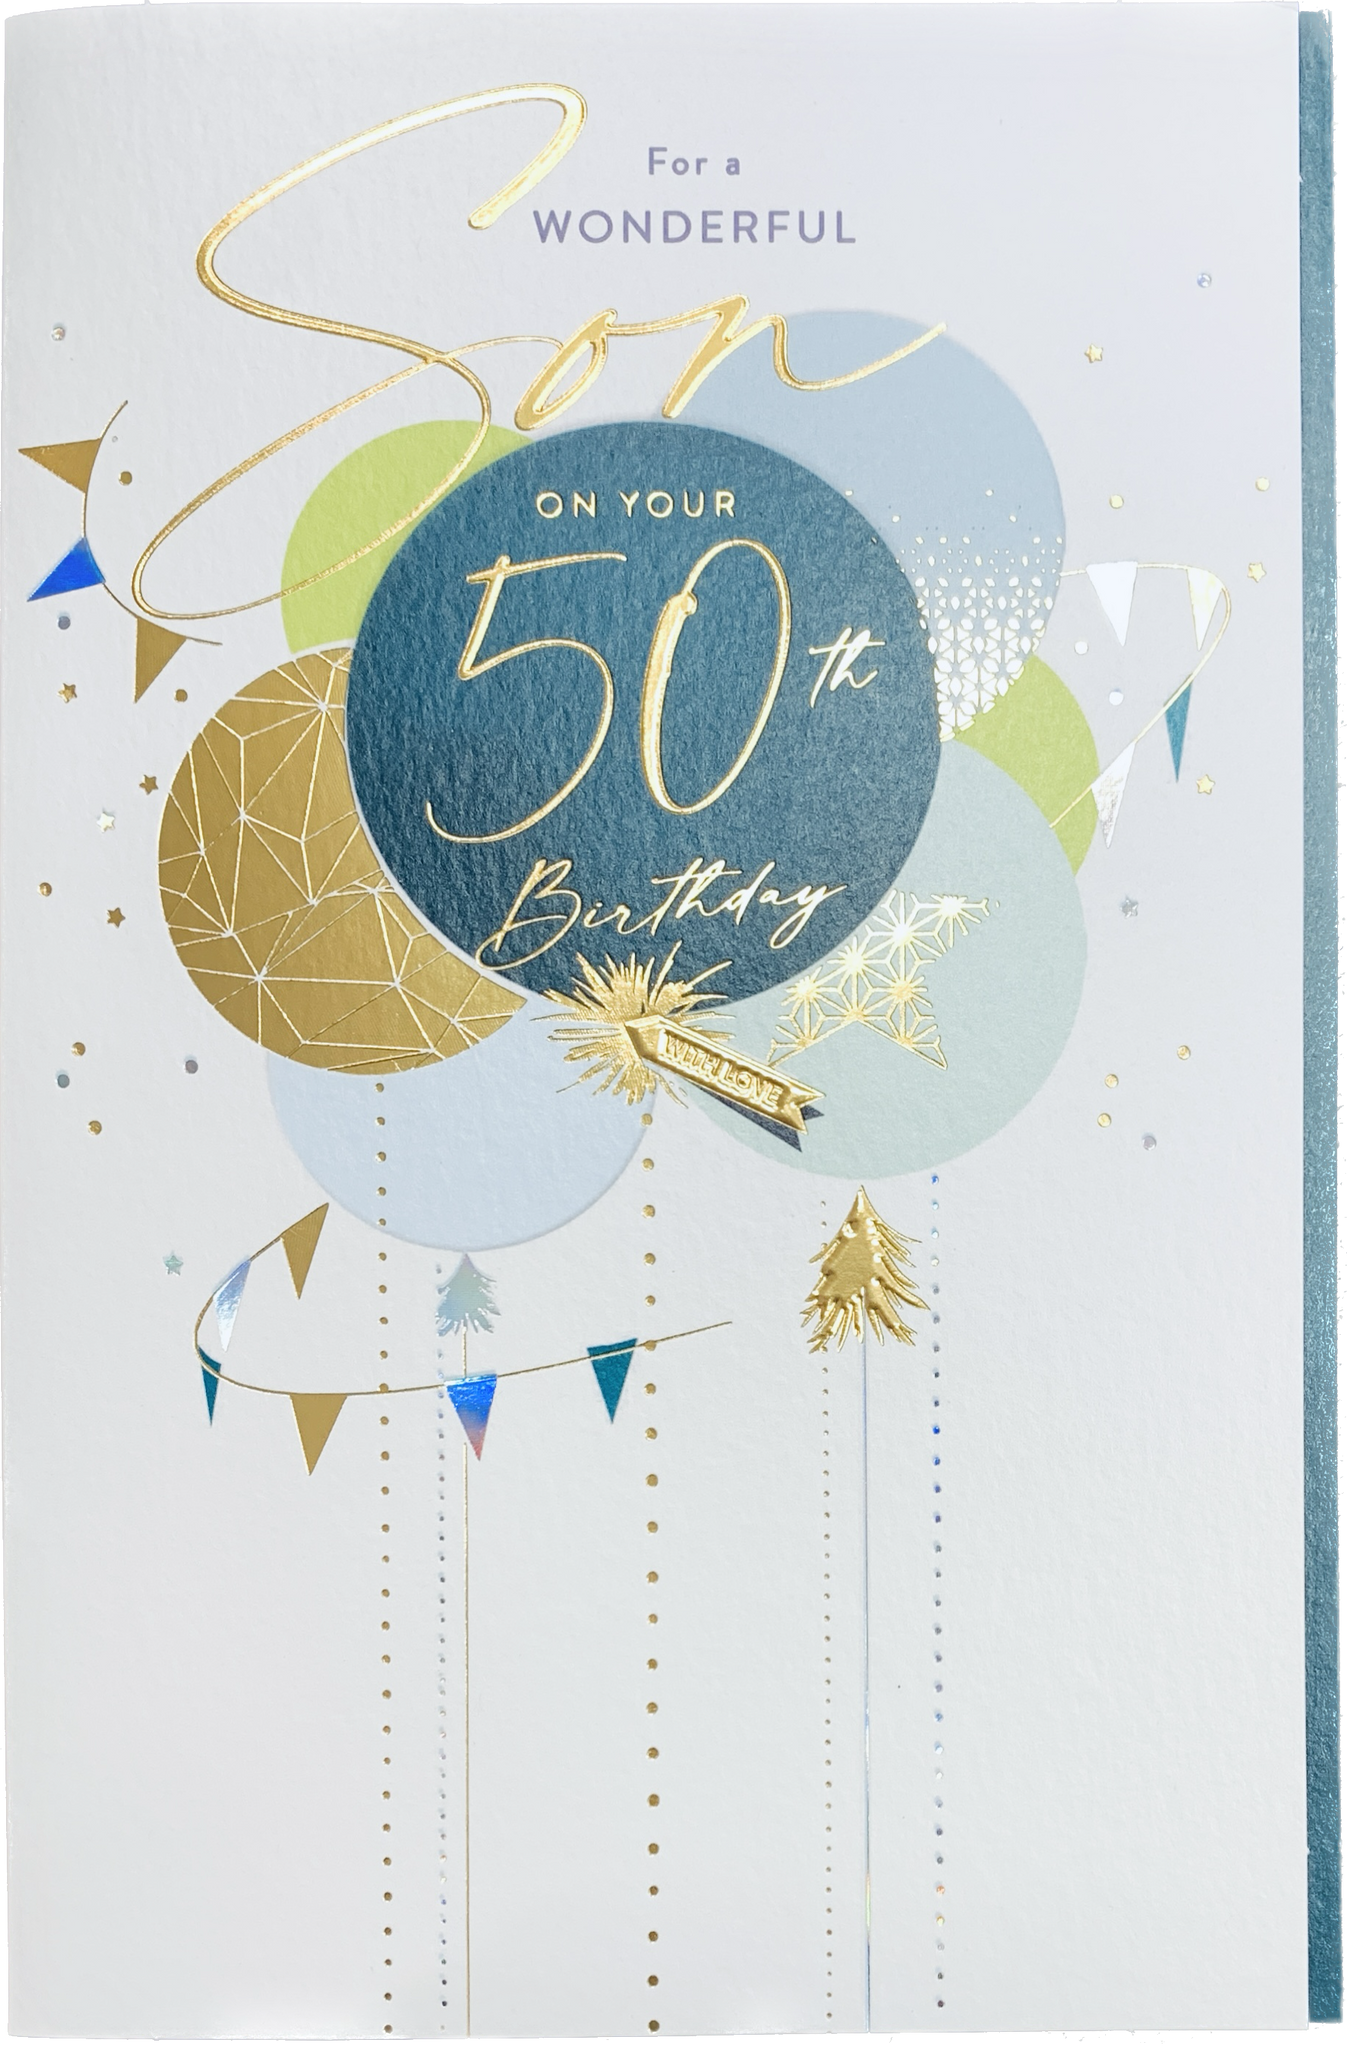 Son 50th birthday card - birthday  balloons